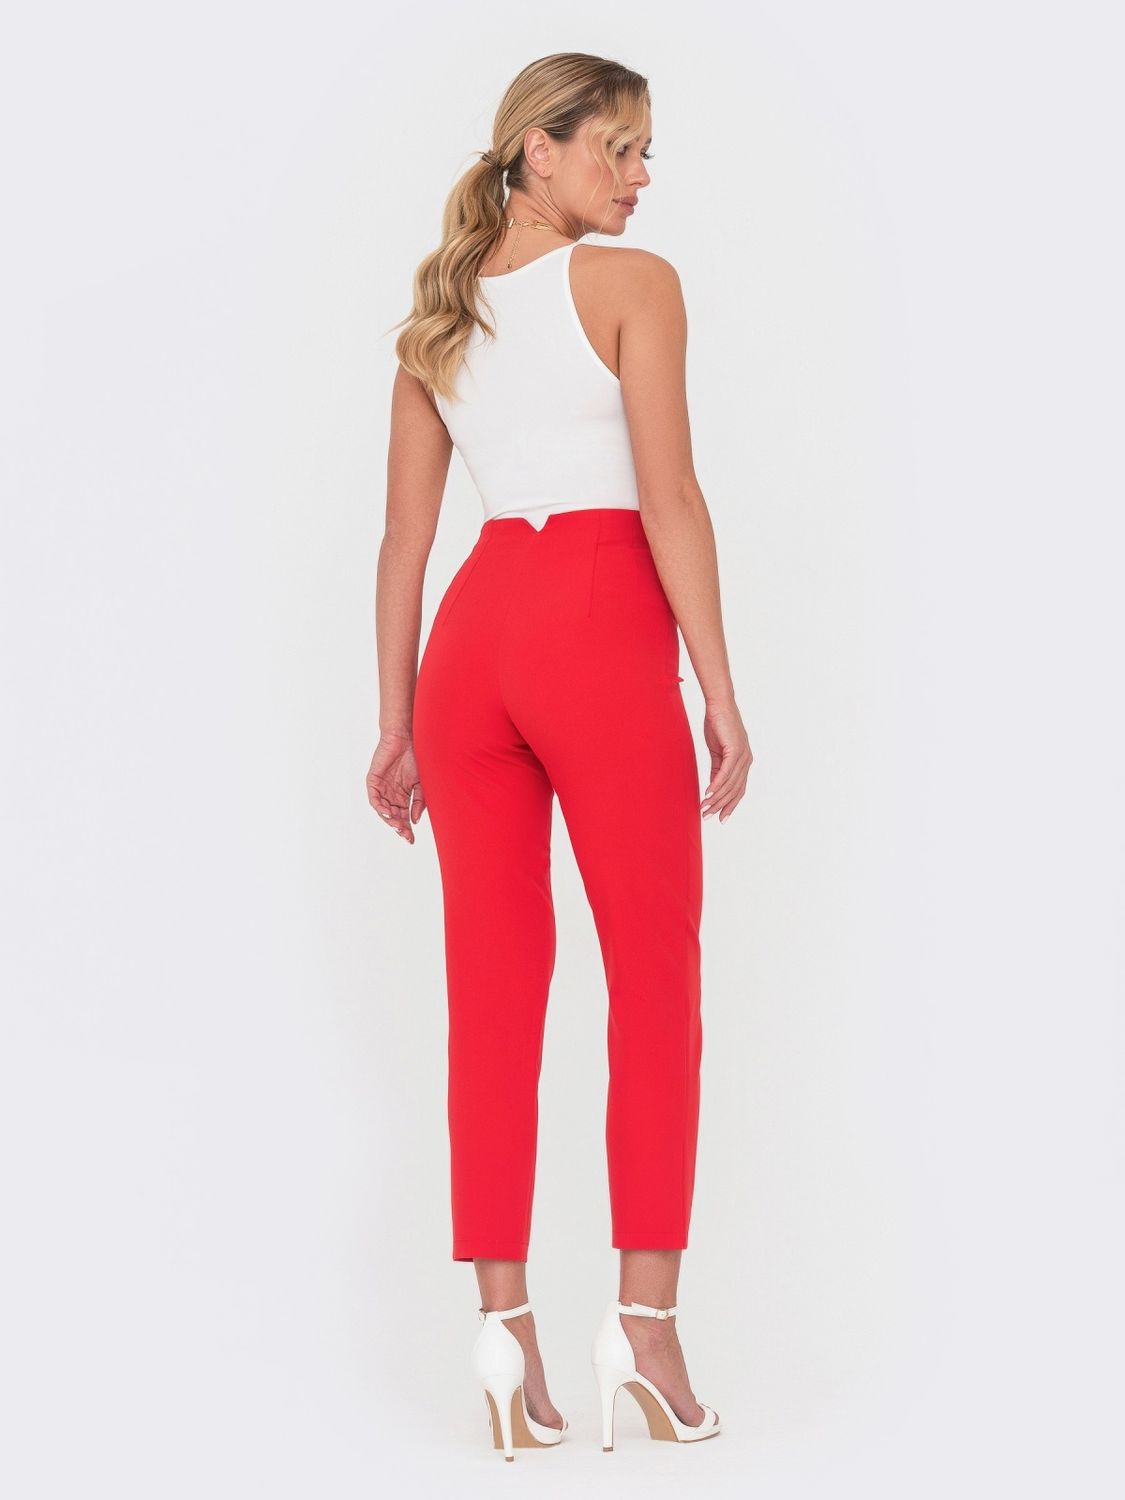 Укороченные брюки с завышенной талией красного цвета - фото